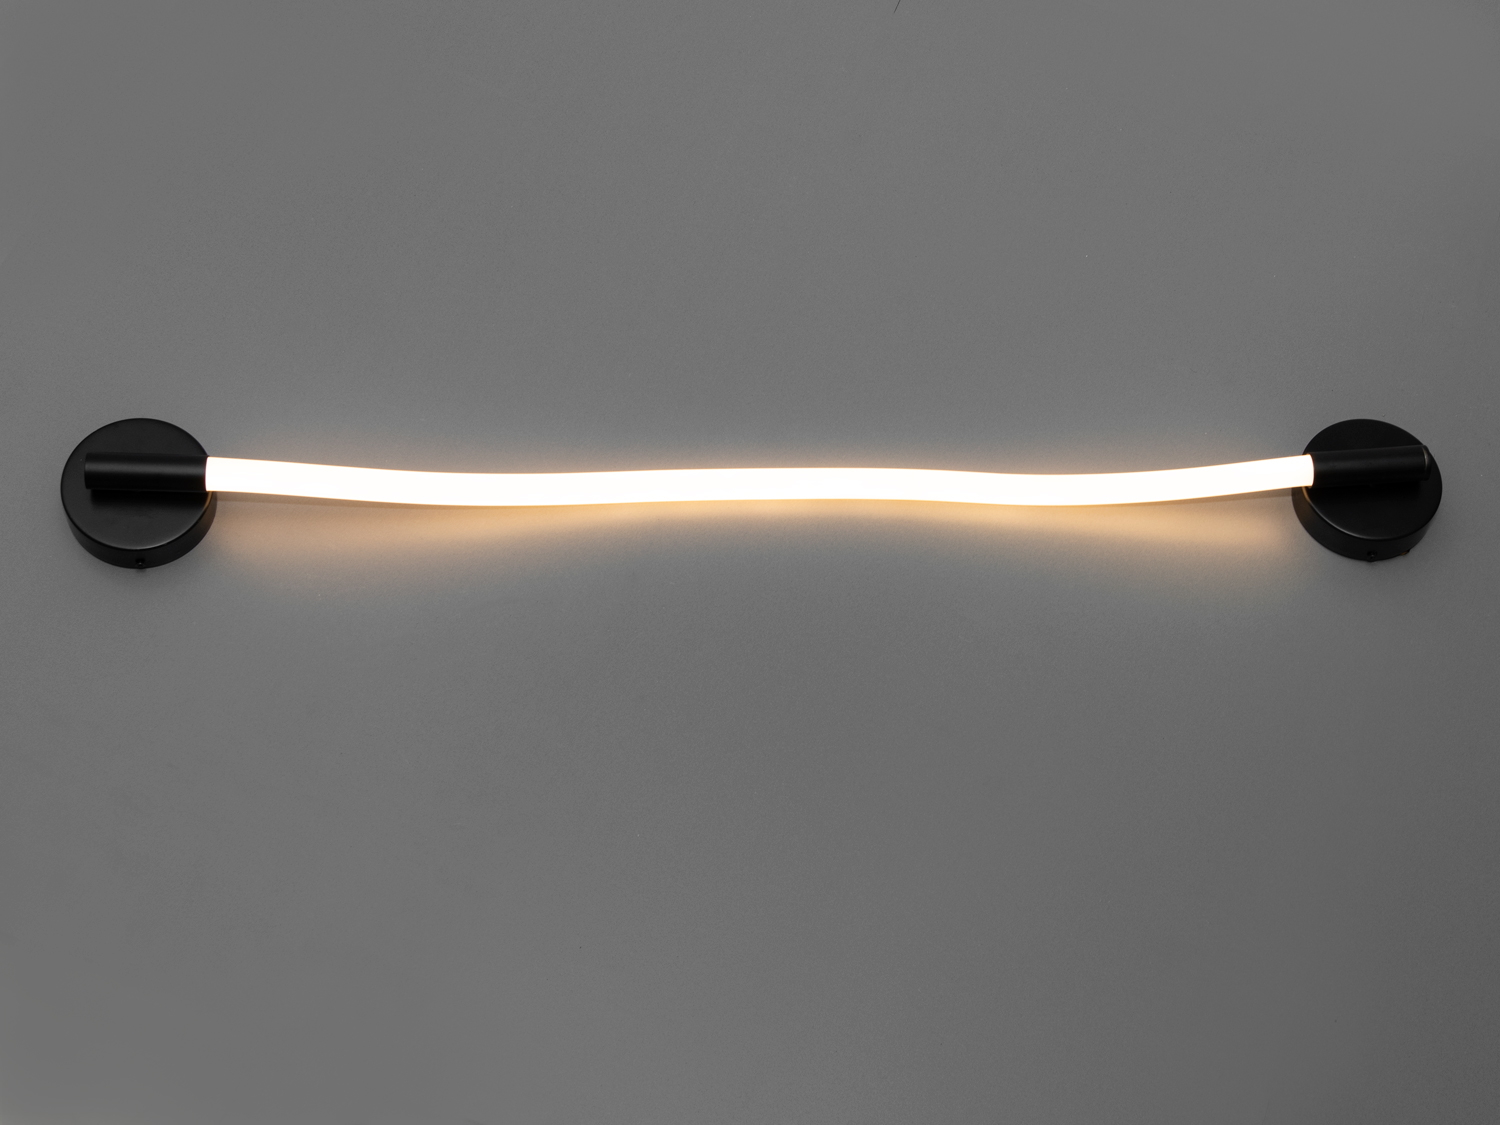 Сучасний LED світильник шланг для кабінету серії Ropelight відмінно підійде для різних типів просторів: від коридорів до віталень, від кабінетів до спалень.
Завдяки двом кріпленням і гнучкому плафону цей виріб може бути встановлений на стіні горизонтально або вертикально. Така гнучкість розміщення робить його ідеальним вибором не тільки для стін, а й для стелі, особливо якщо вам потрібно доповнити основну люстру в коридорі чи іншому просторі.
Колірна температура 3200К створює комфортну затишну атмосферу. Такий діапазон є оптимальним для створення комфортного освітлення, яке сприятливо впливає на настрій та добре комбінується із різними стилями інтер'єру.
Кріпиться до будь-яких поверхонь універсальним кріпленням на монтажну планку.